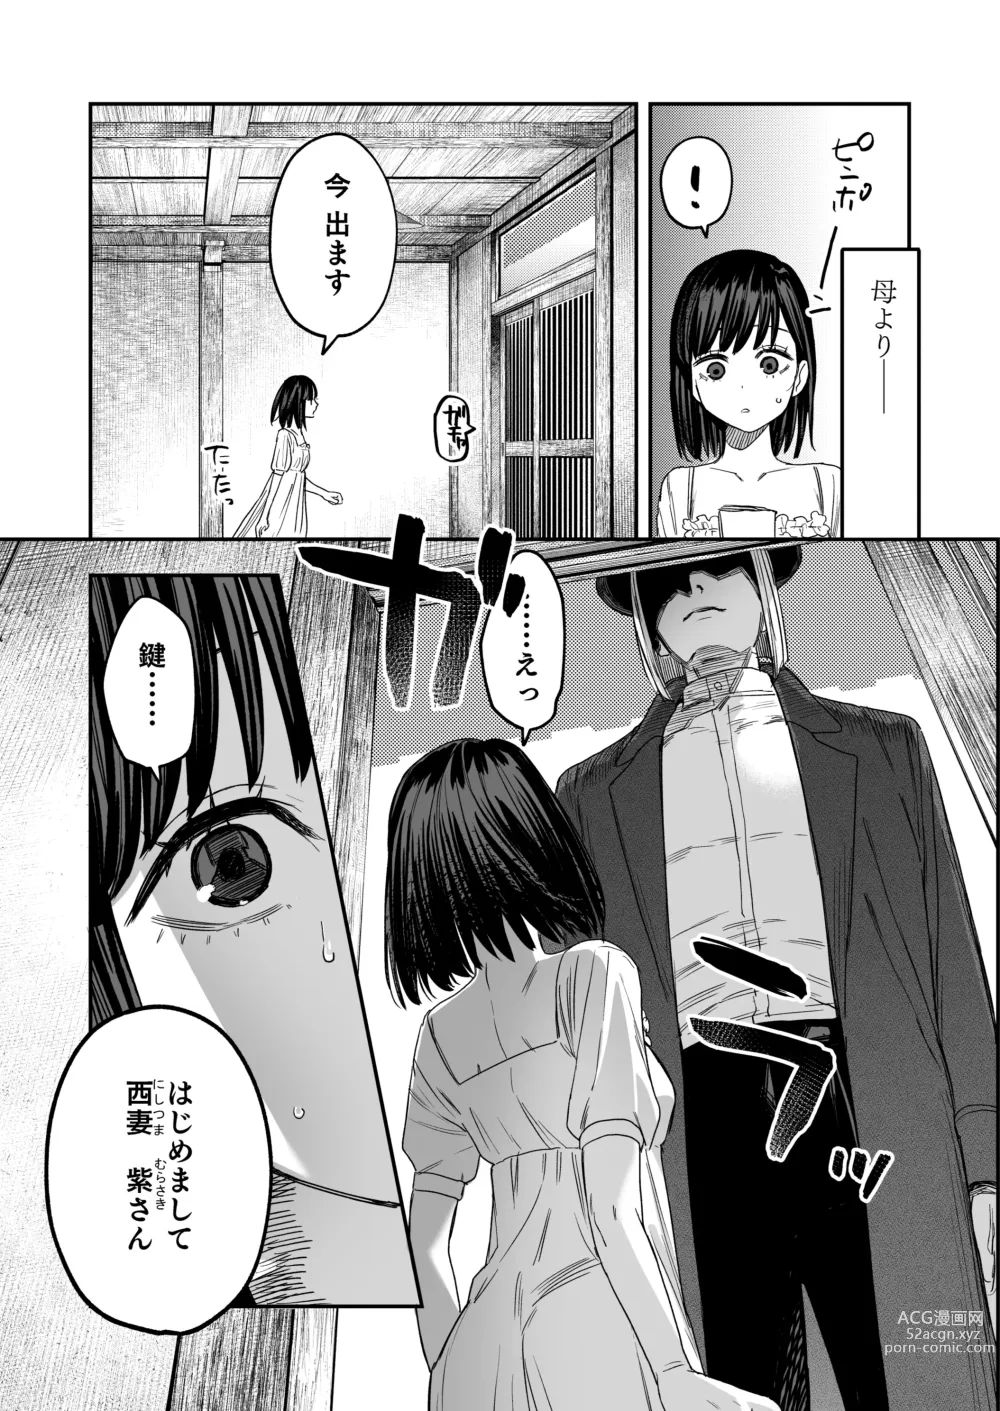 Page 4 of doujinshi Hachiroku Sou - Ieori to Hana Katajikena no Yome